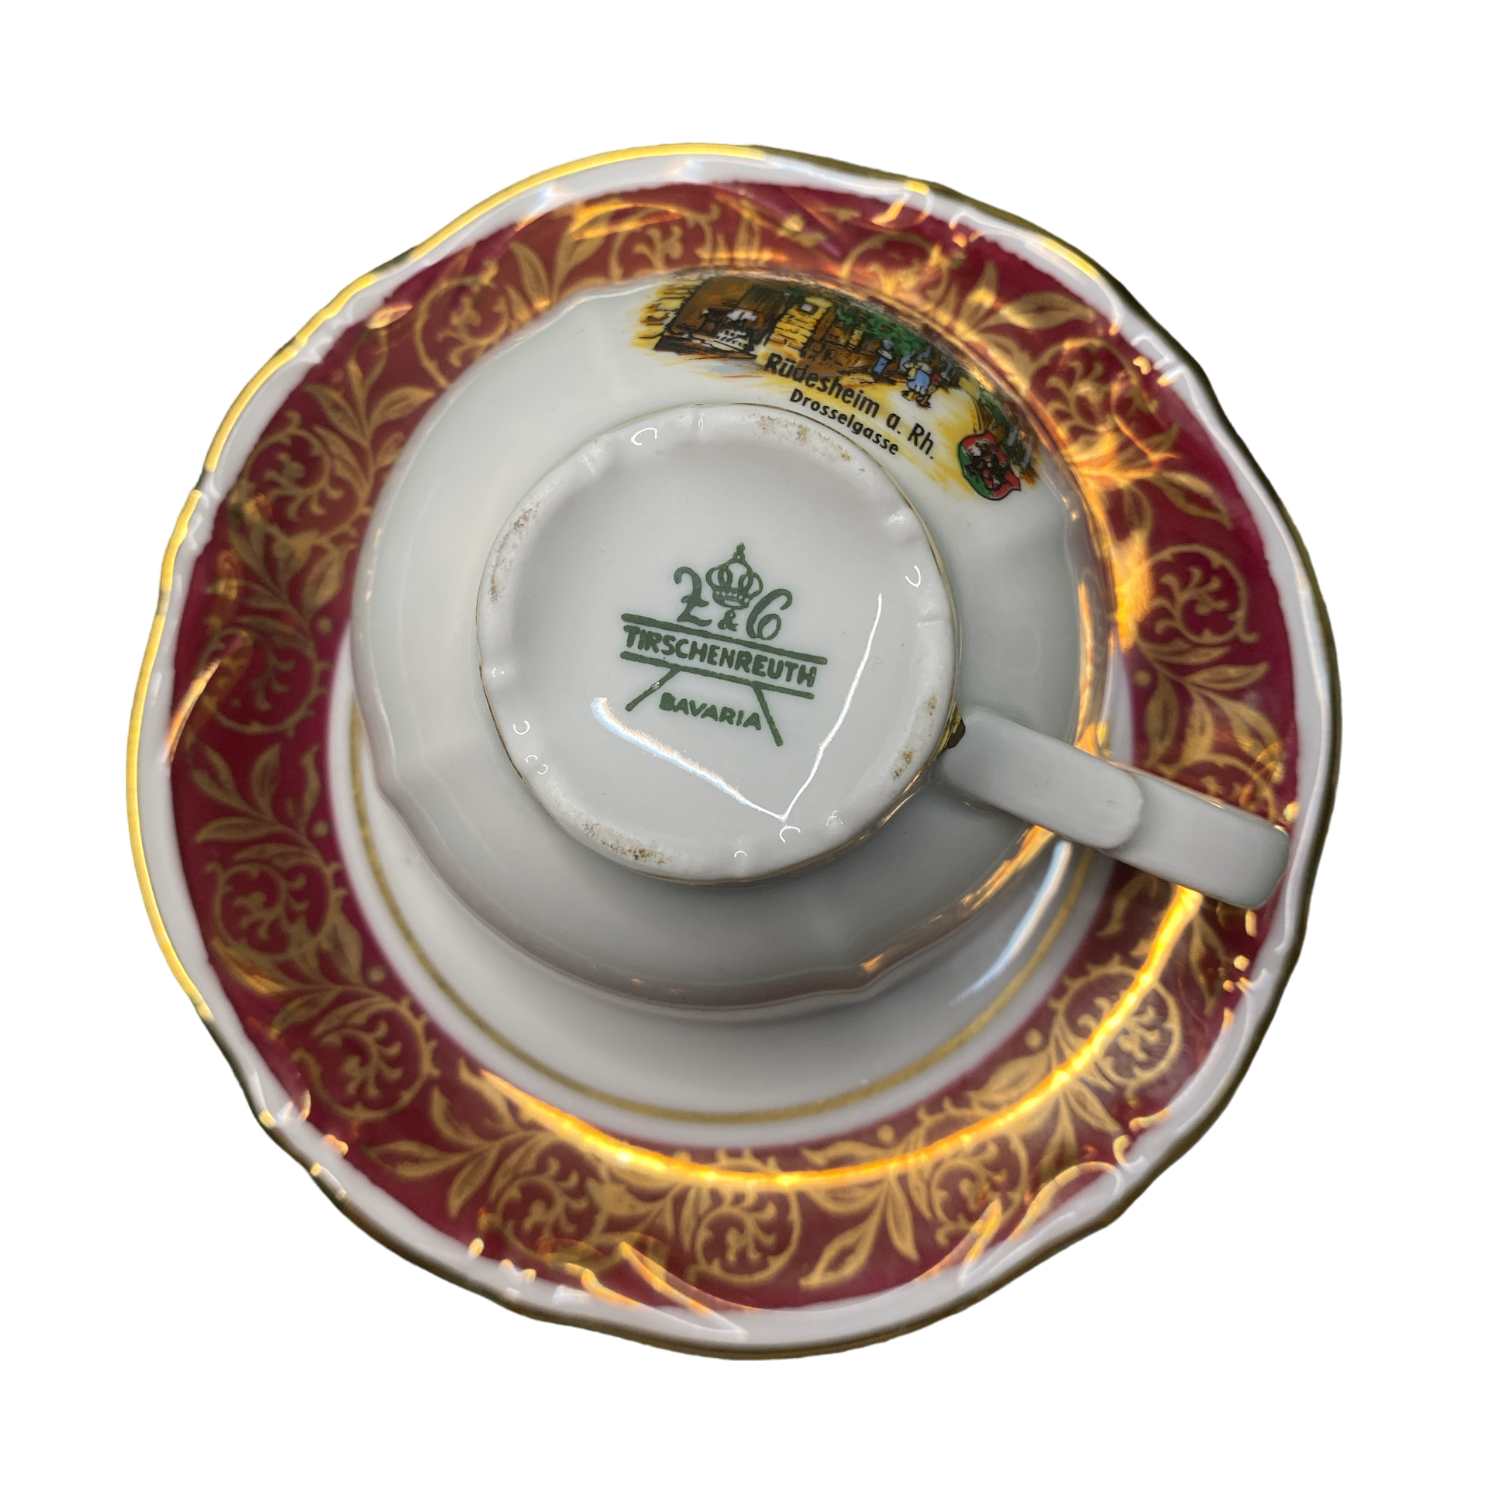 Preloved Bavaria Teacup And Saucer